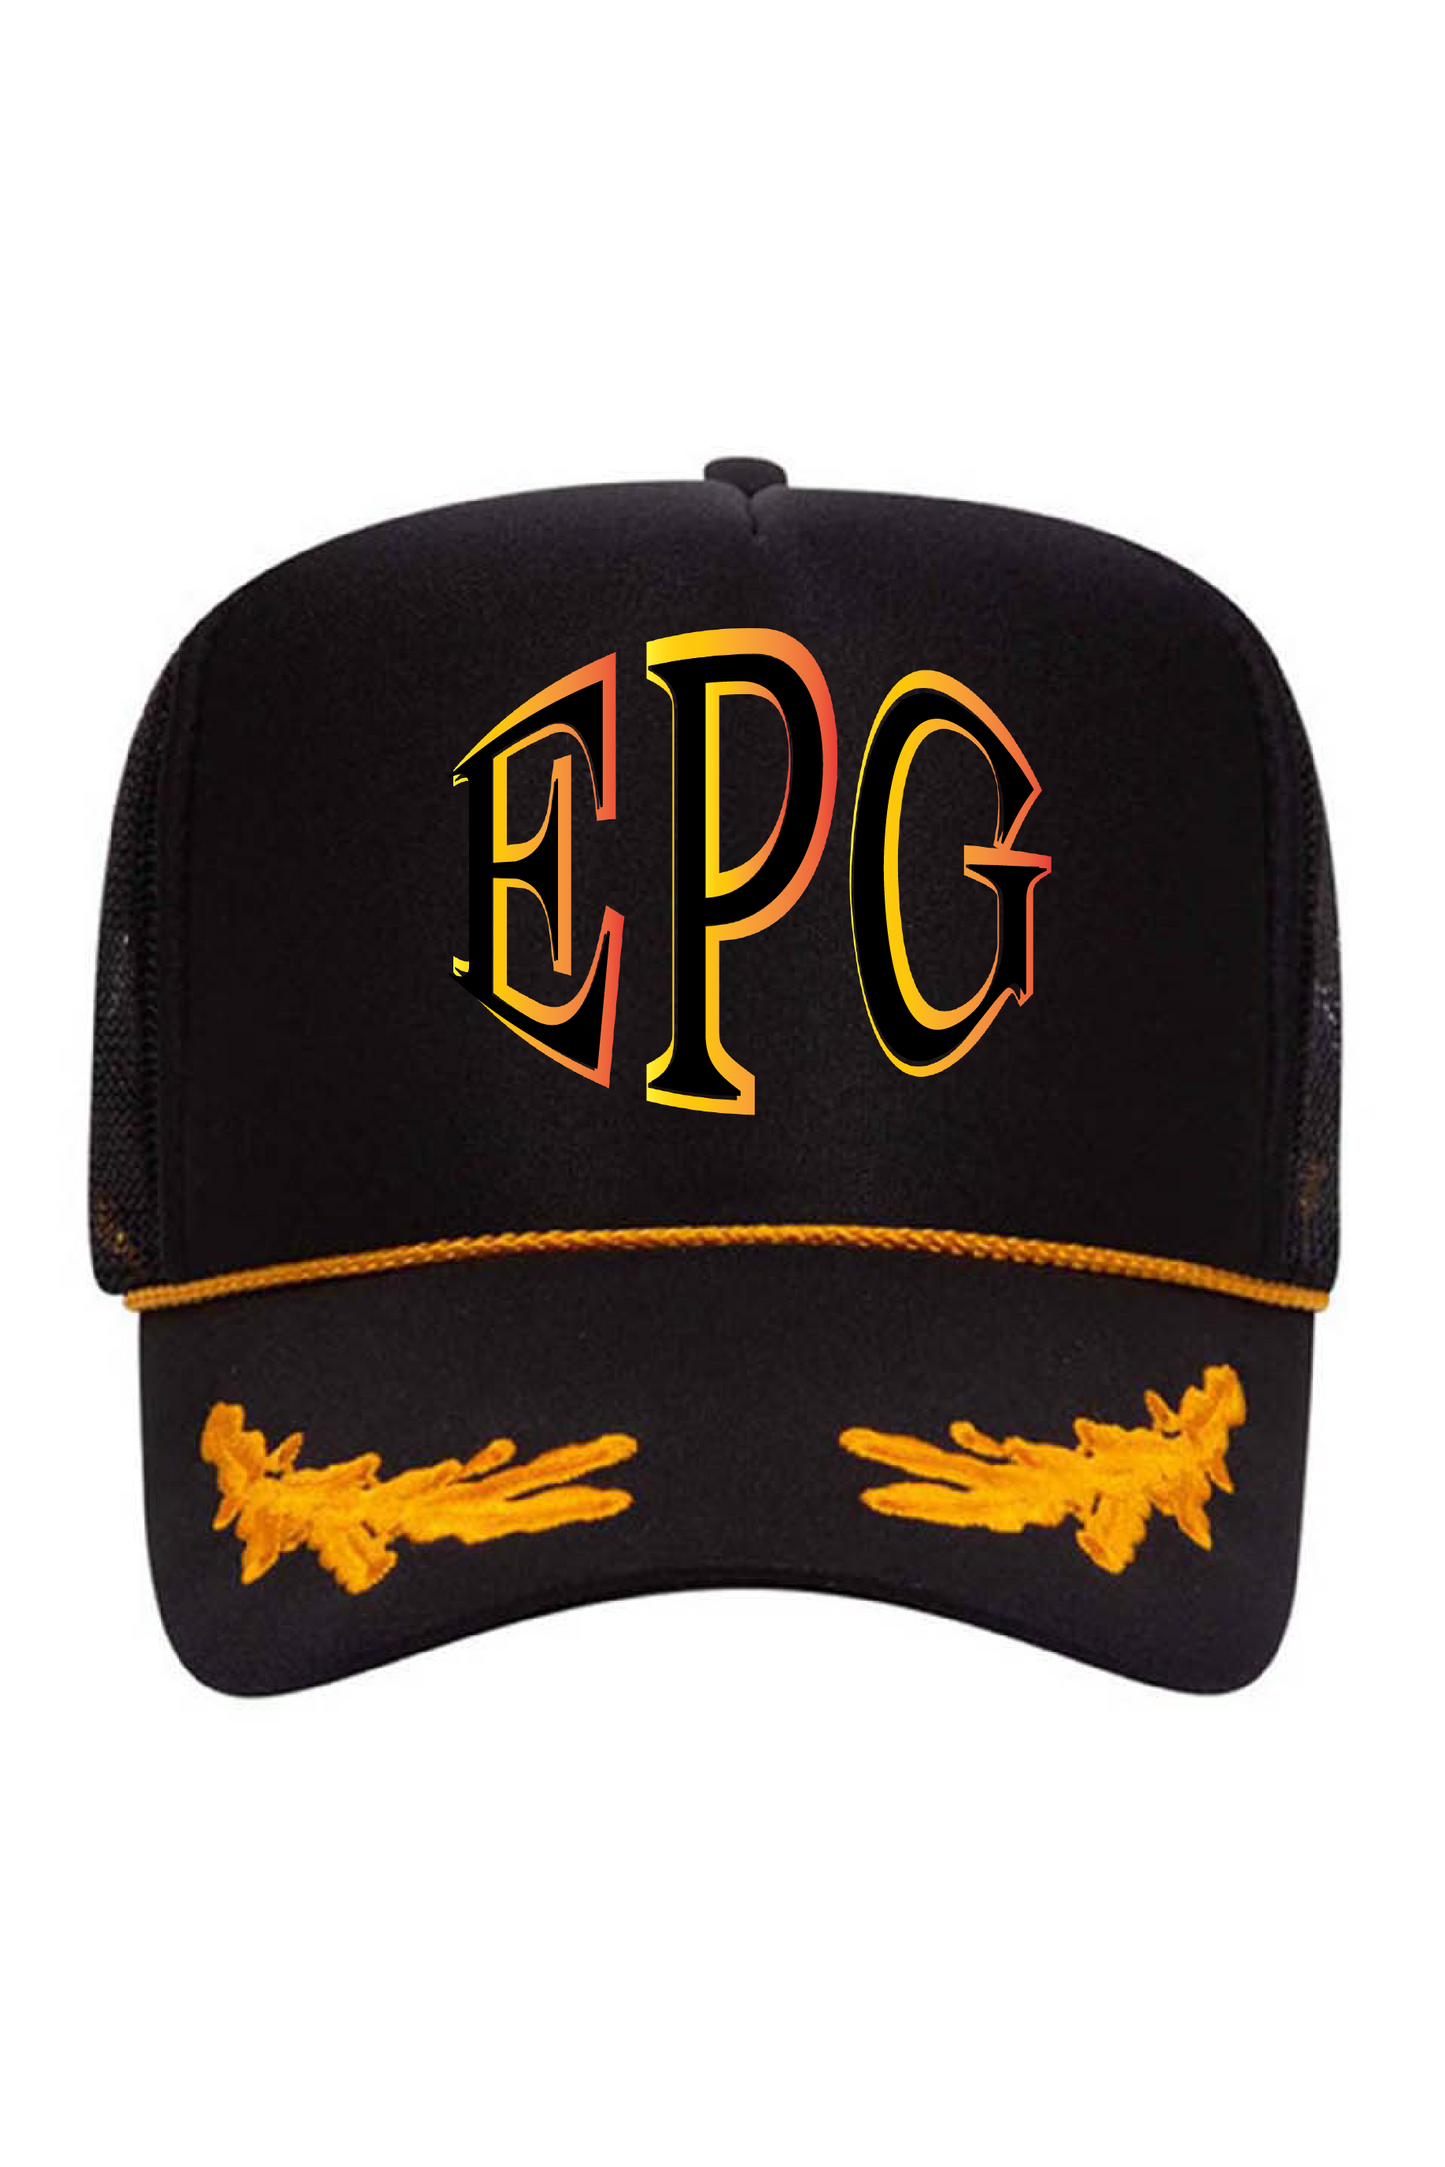 EPG Trucker Hat